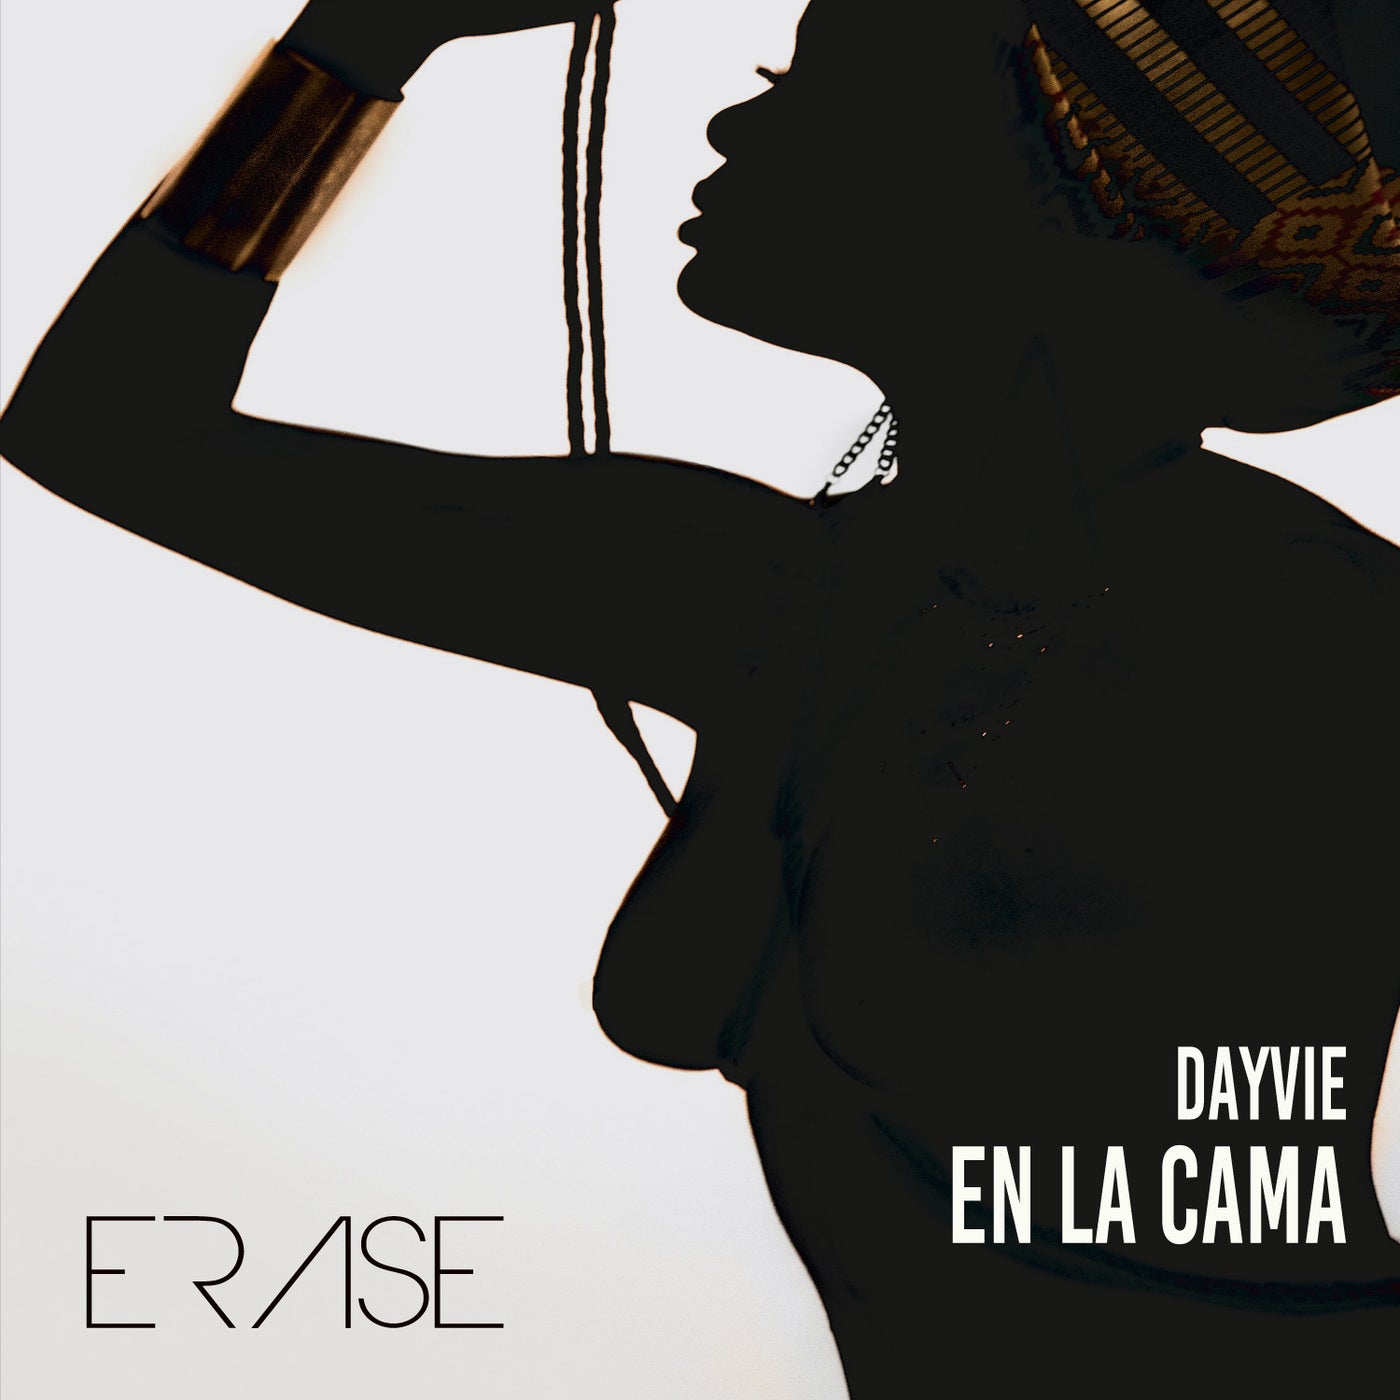 image cover: Dayvie - En La Cama (Original Mix) on Erase Records